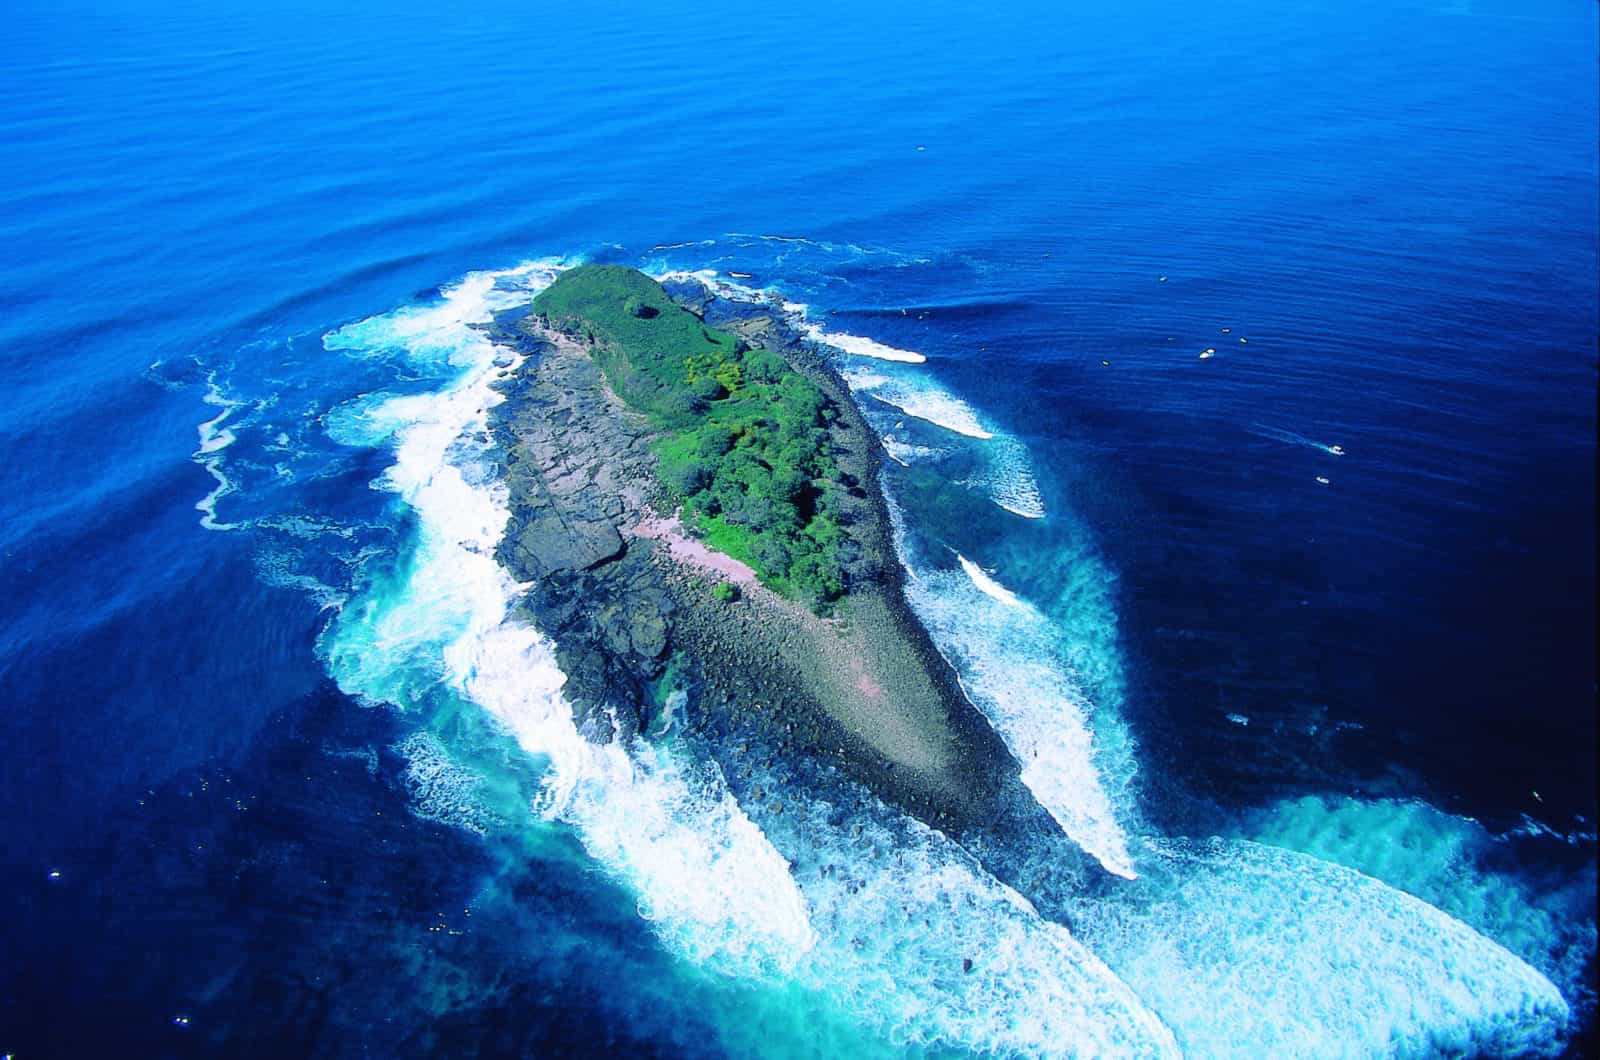 Mudjimba or Old Woman Island